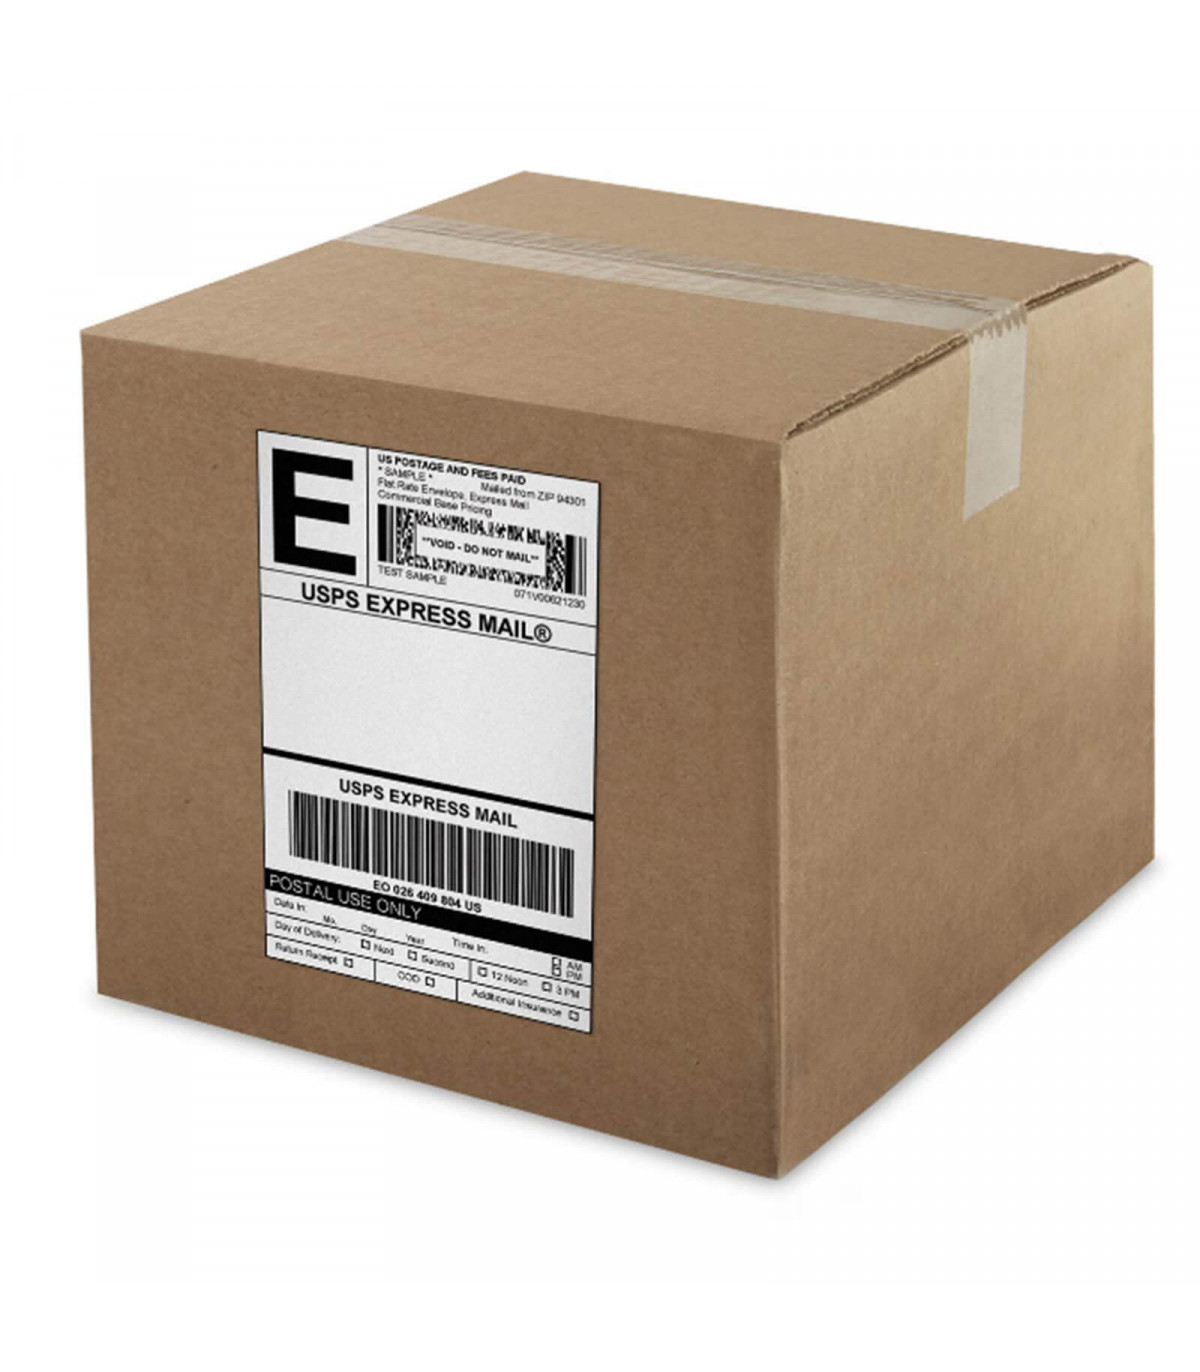 Shipping label là gì? Hướng dẫn cách đọc thông số trên tem nhãn vận chuyển?